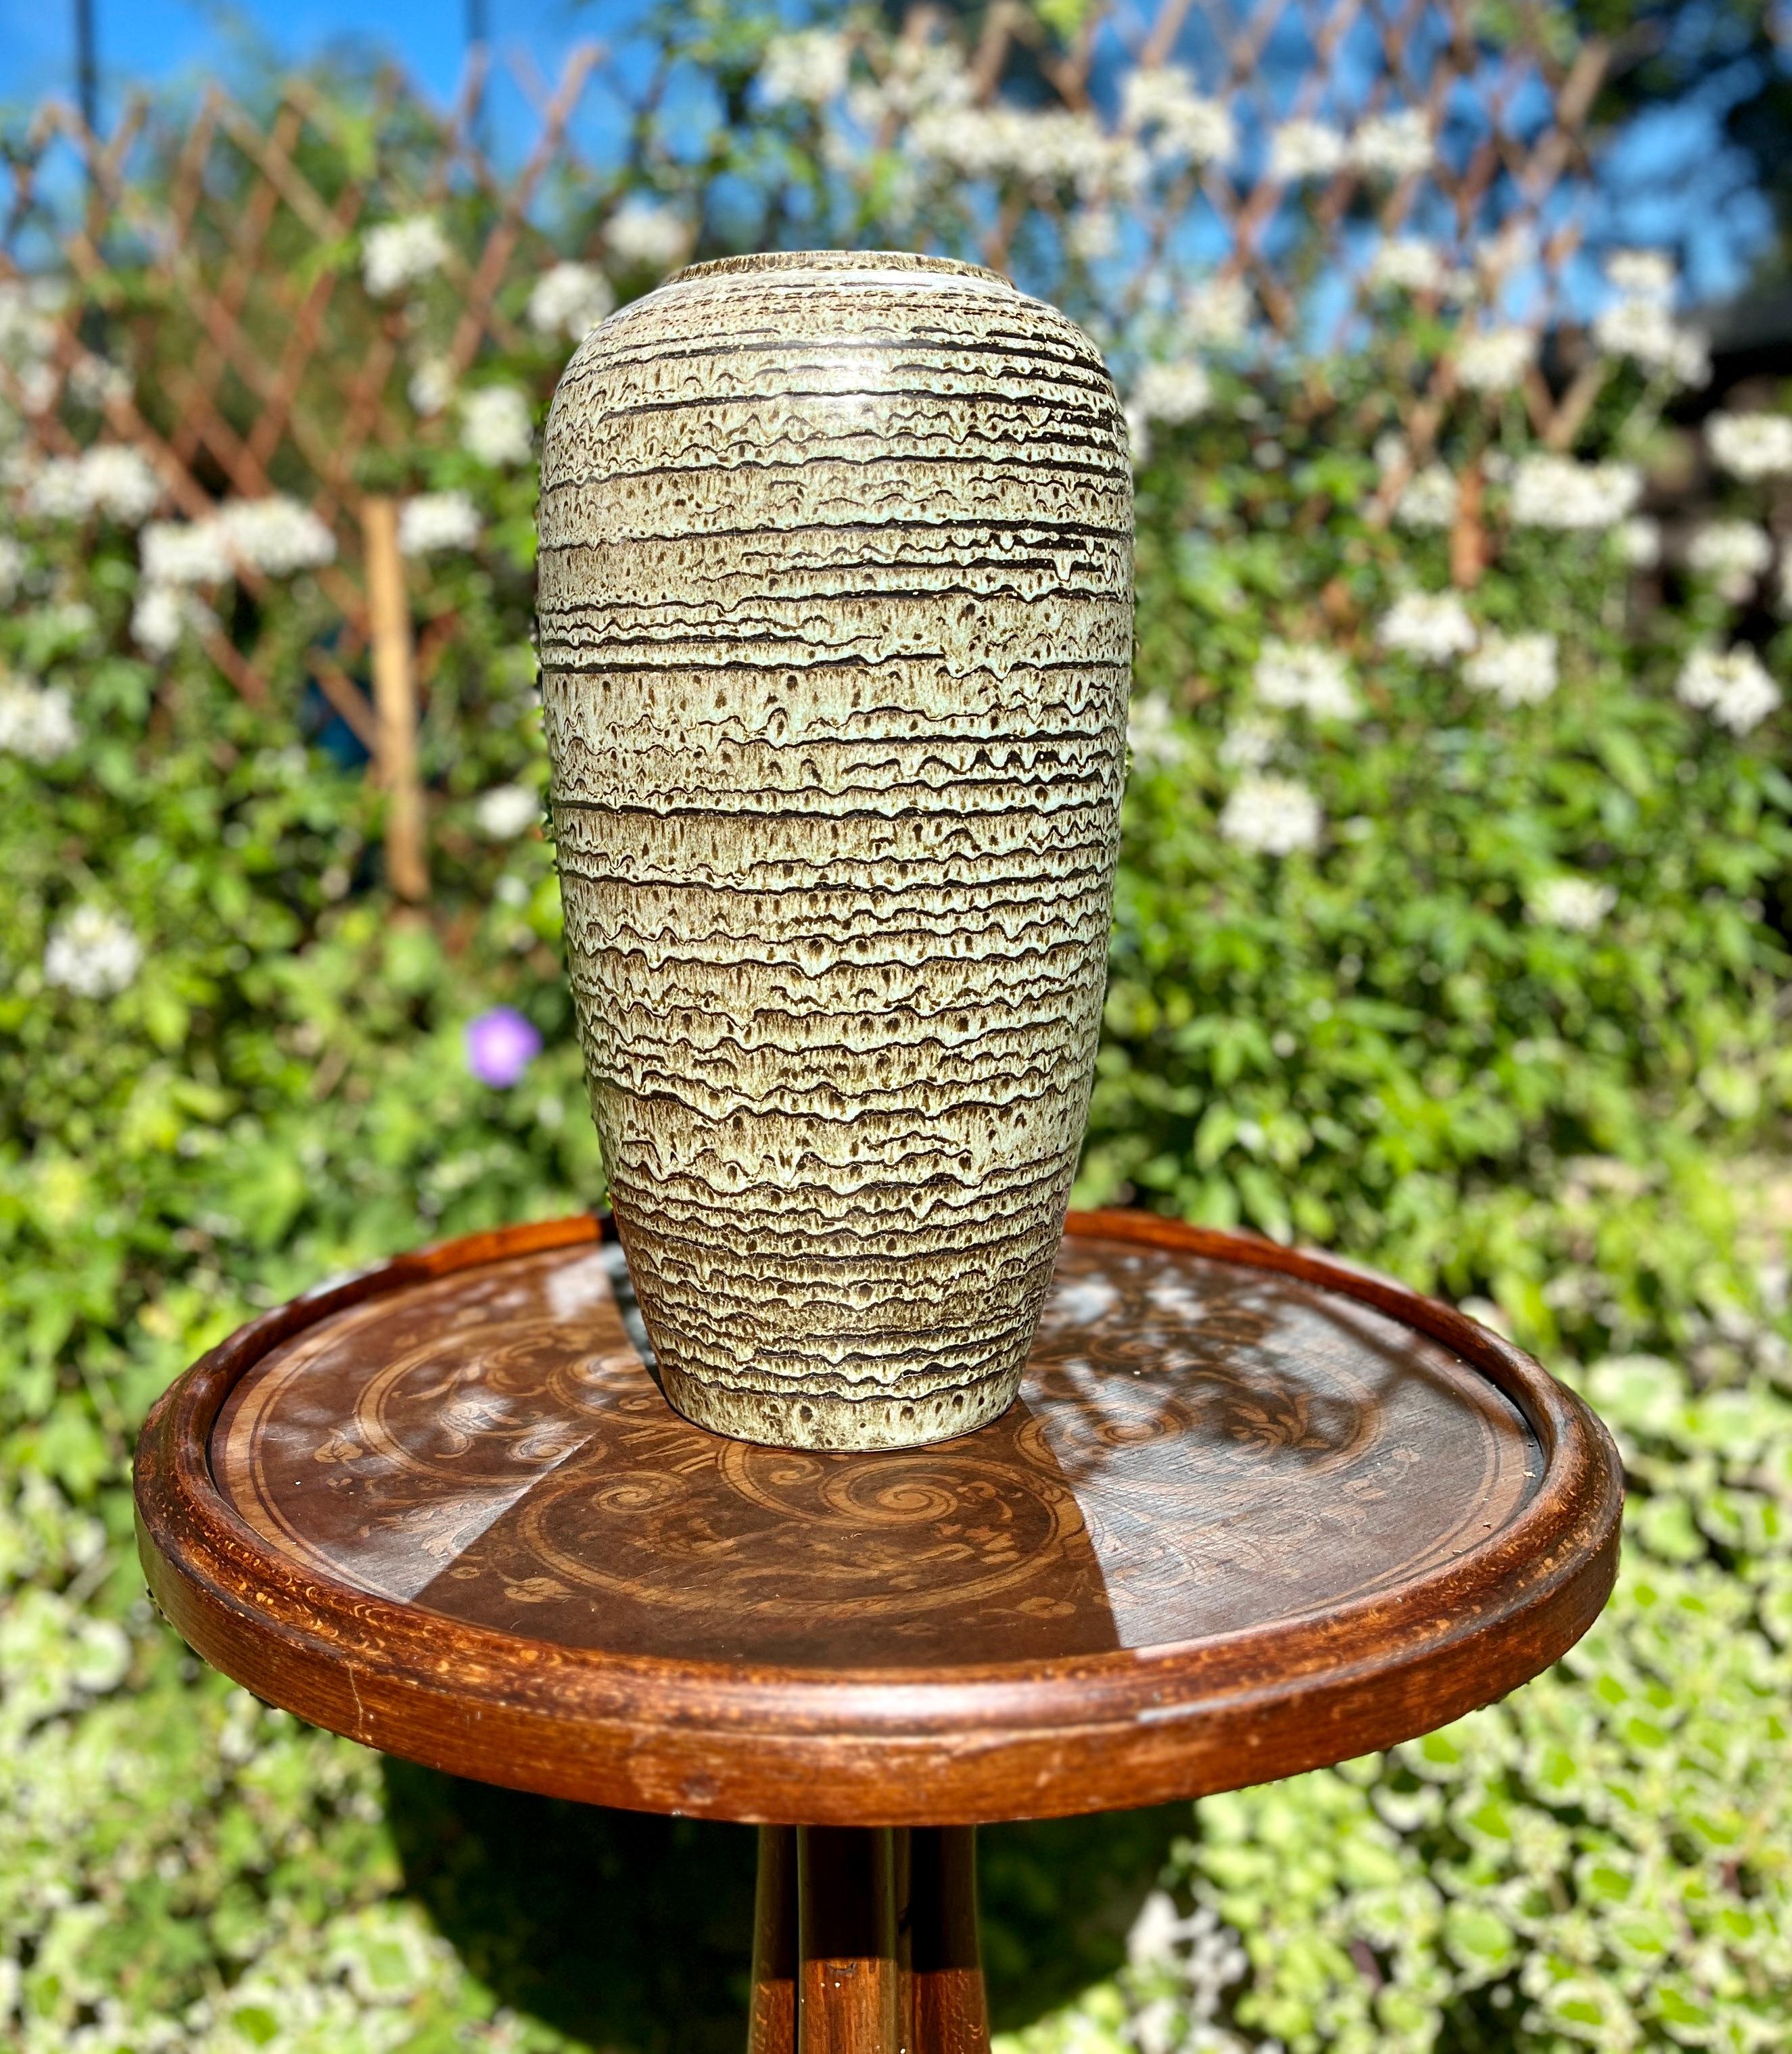 Diese original Jasba Vase wurde in den 1970er Jahren in Deutschland hergestellt. Sie ist aus Keramik gefertigt.
Auf dem Boden ist die Vasenseriennummer 585-40 Handarbeit vermerkt.
Geradliniges und minimalistisches Design aus den 1960er Jahren.